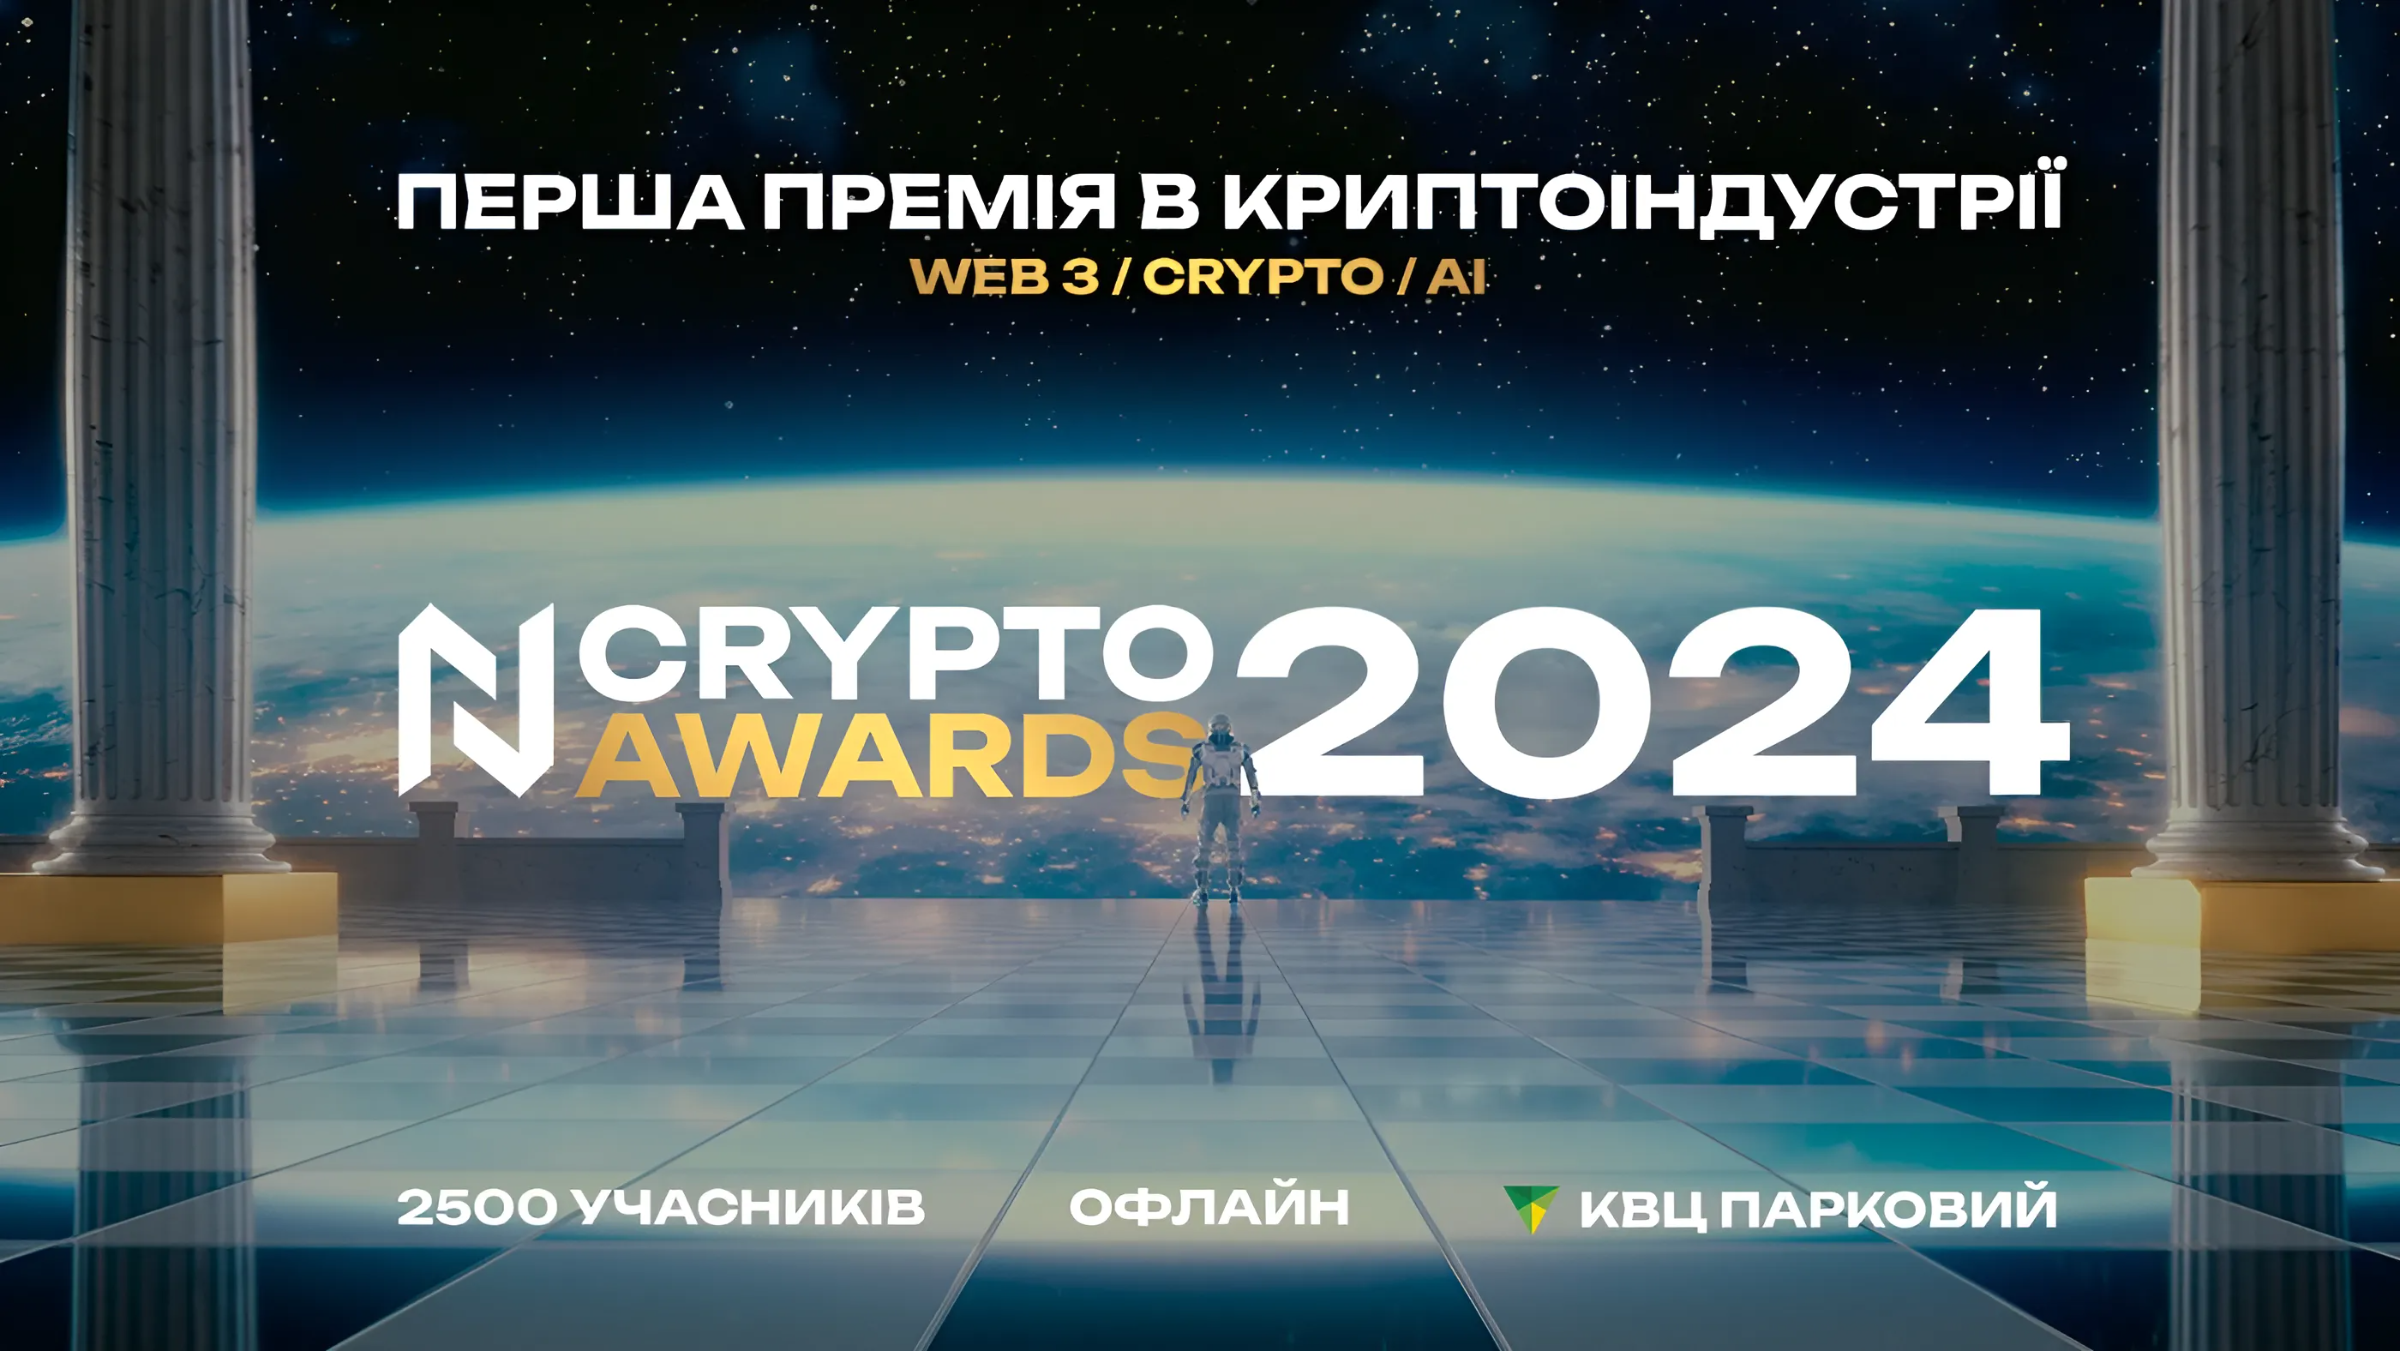 N Crypto Awards 2024: 2500 участников, экспозоны и голосование за лучших в криптосфере, web3 и AI